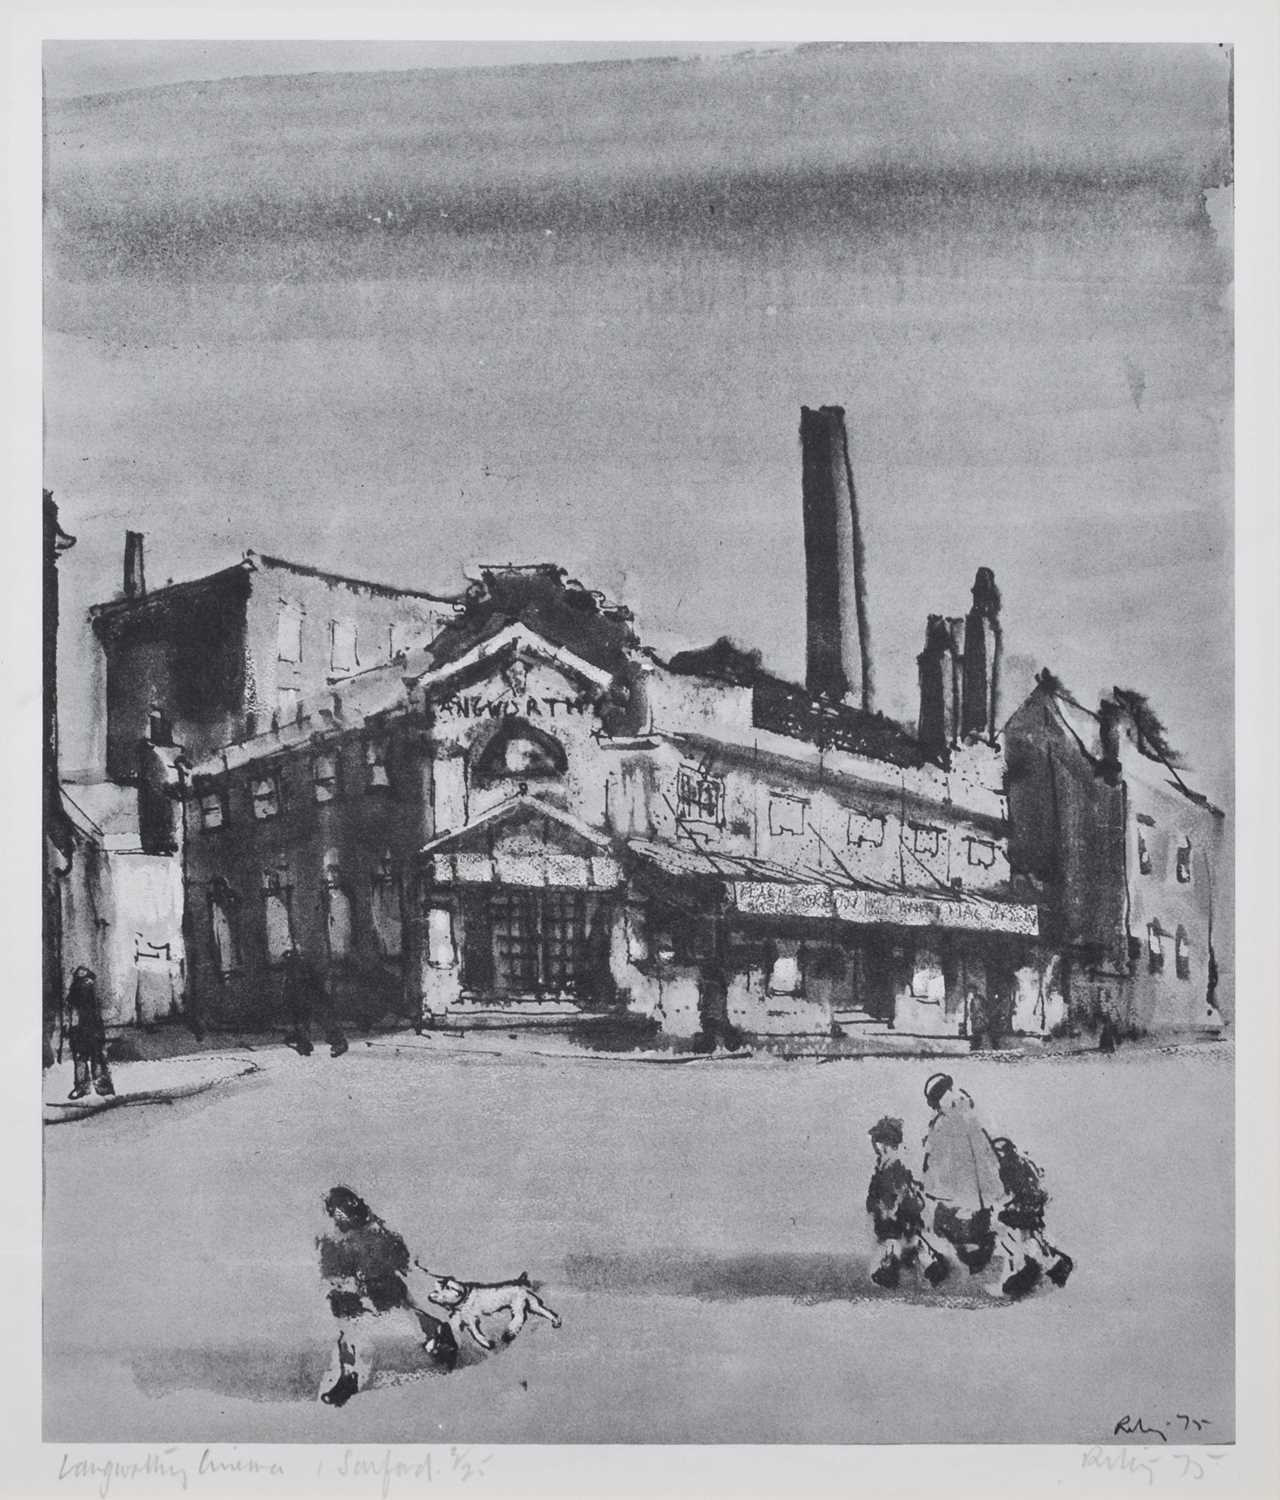 Lot 108 - After Harold Riley, "Langworthy Cinema, Salford", signed print.